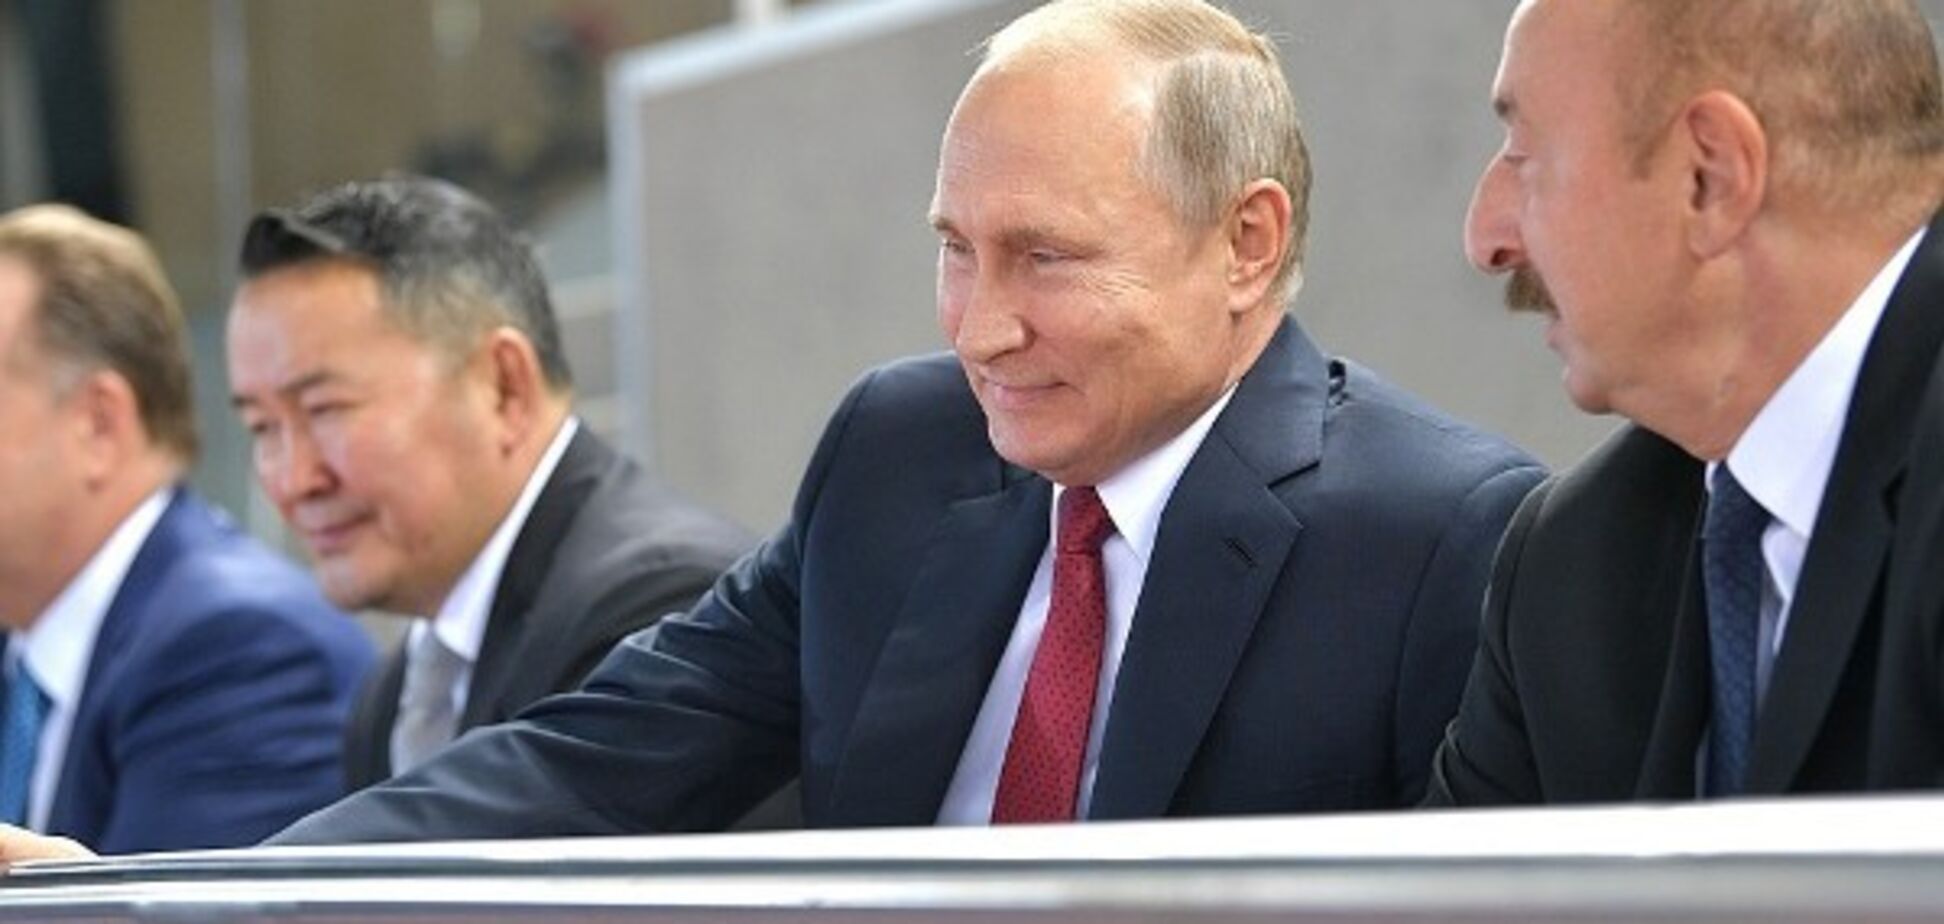 Сборная России 'обломала' Путина на чемпионате мира